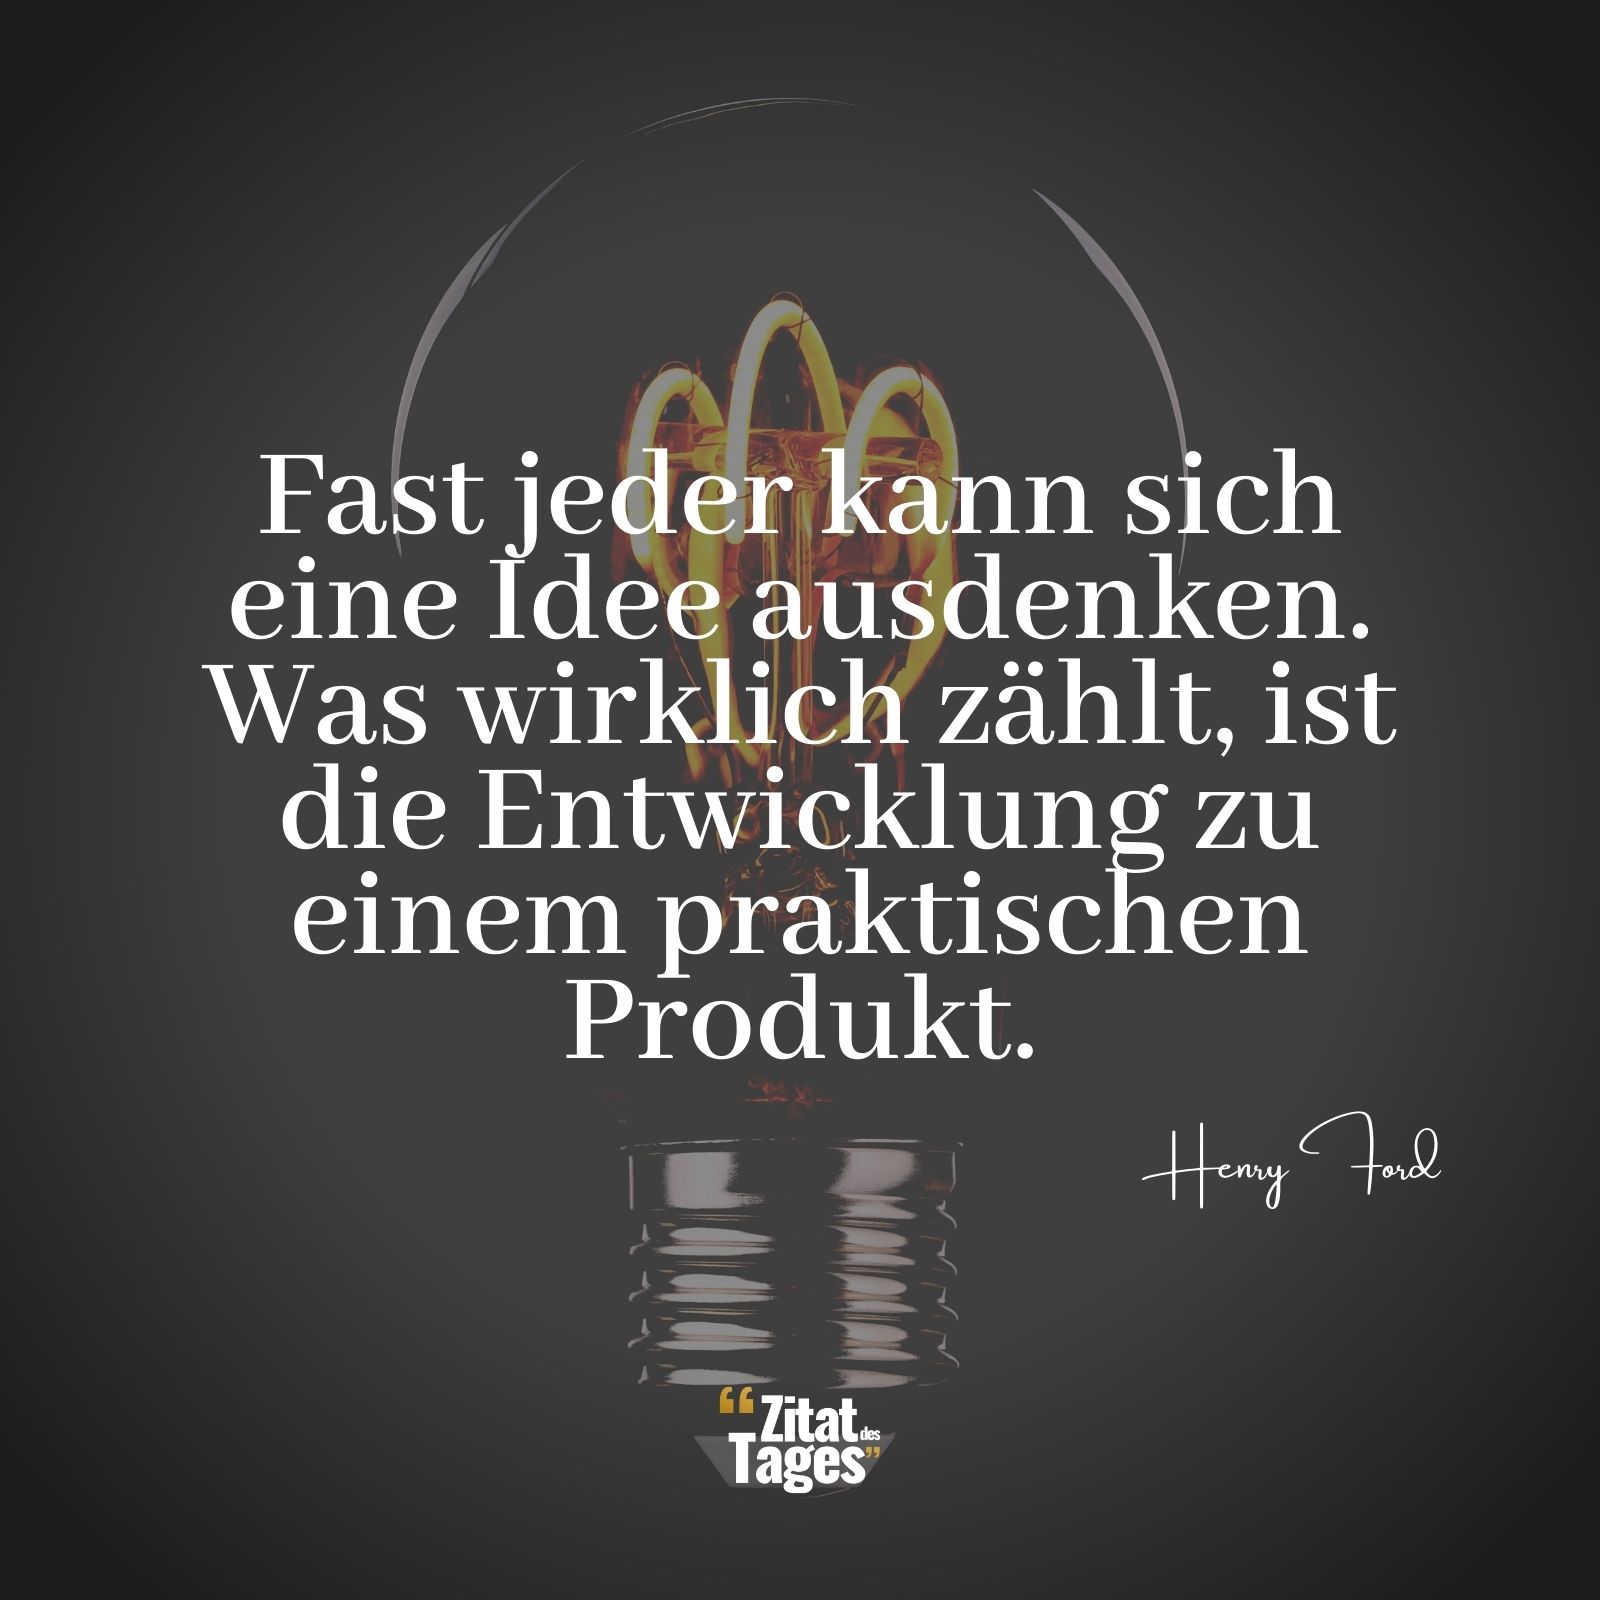 Fast jeder kann sich eine Idee ausdenken. Was wirklich zählt, ist die Entwicklung zu einem praktischen Produkt. - Henry Ford